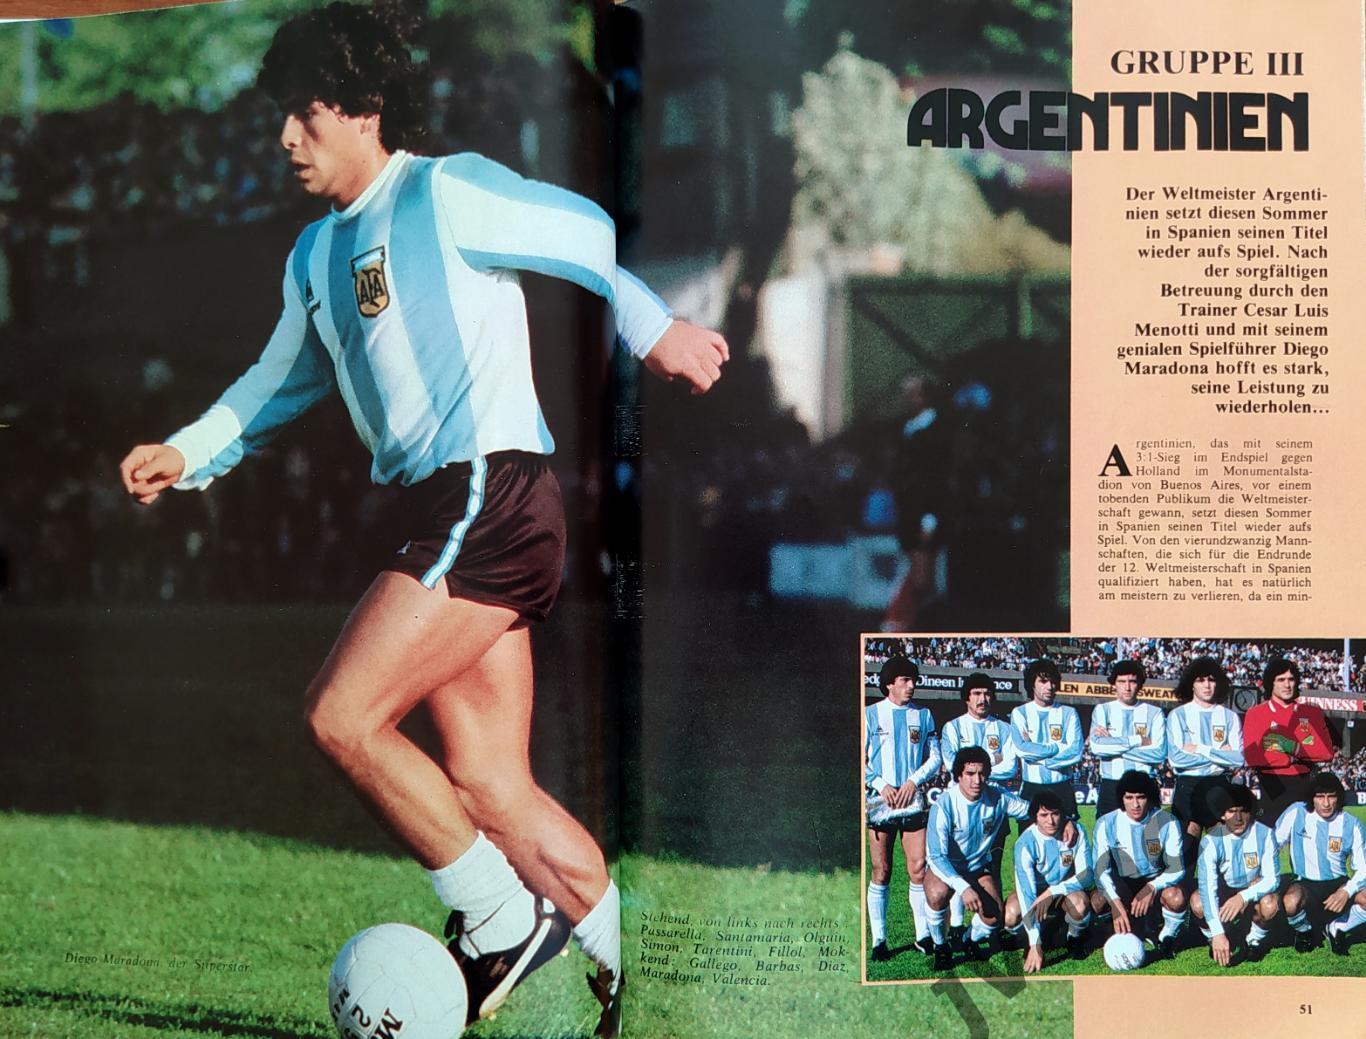 World Cup Spanien-82 / Чемпионат Мира по футболу*82 в Испании. Превью команд. 3